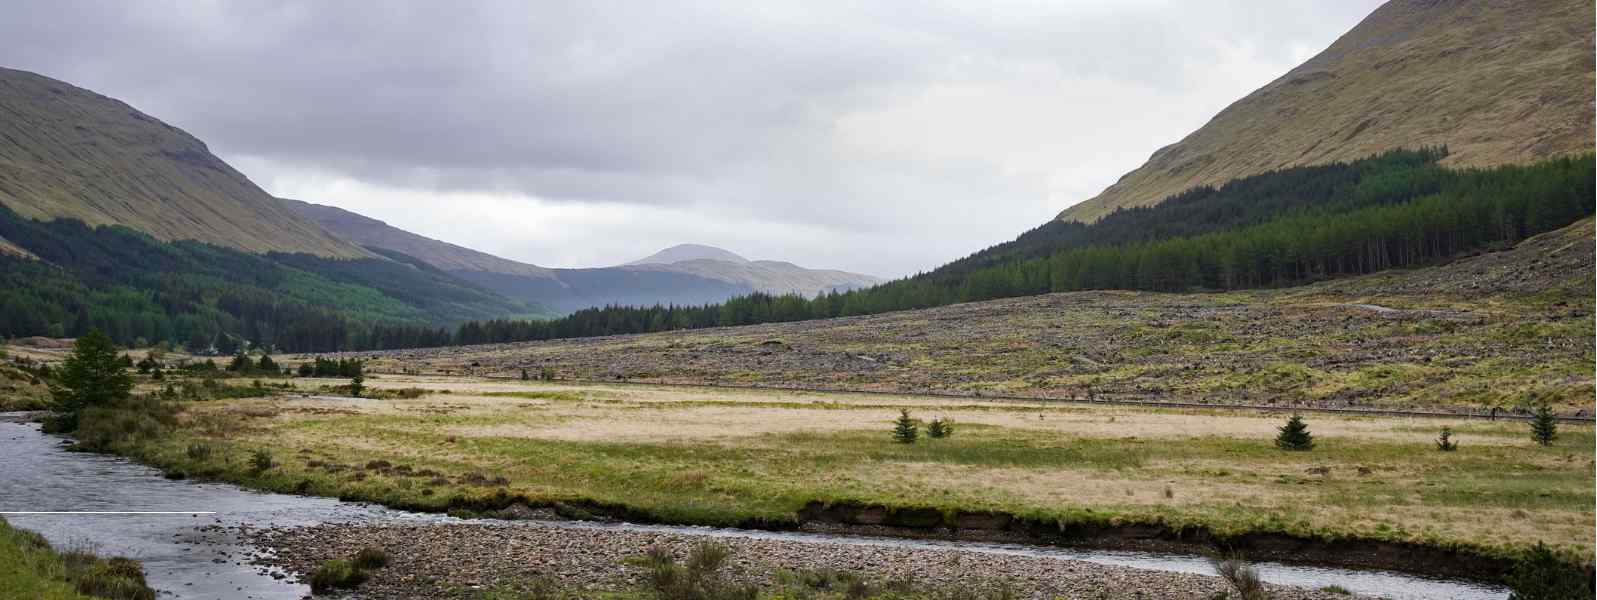 River Lochy near Dalmally